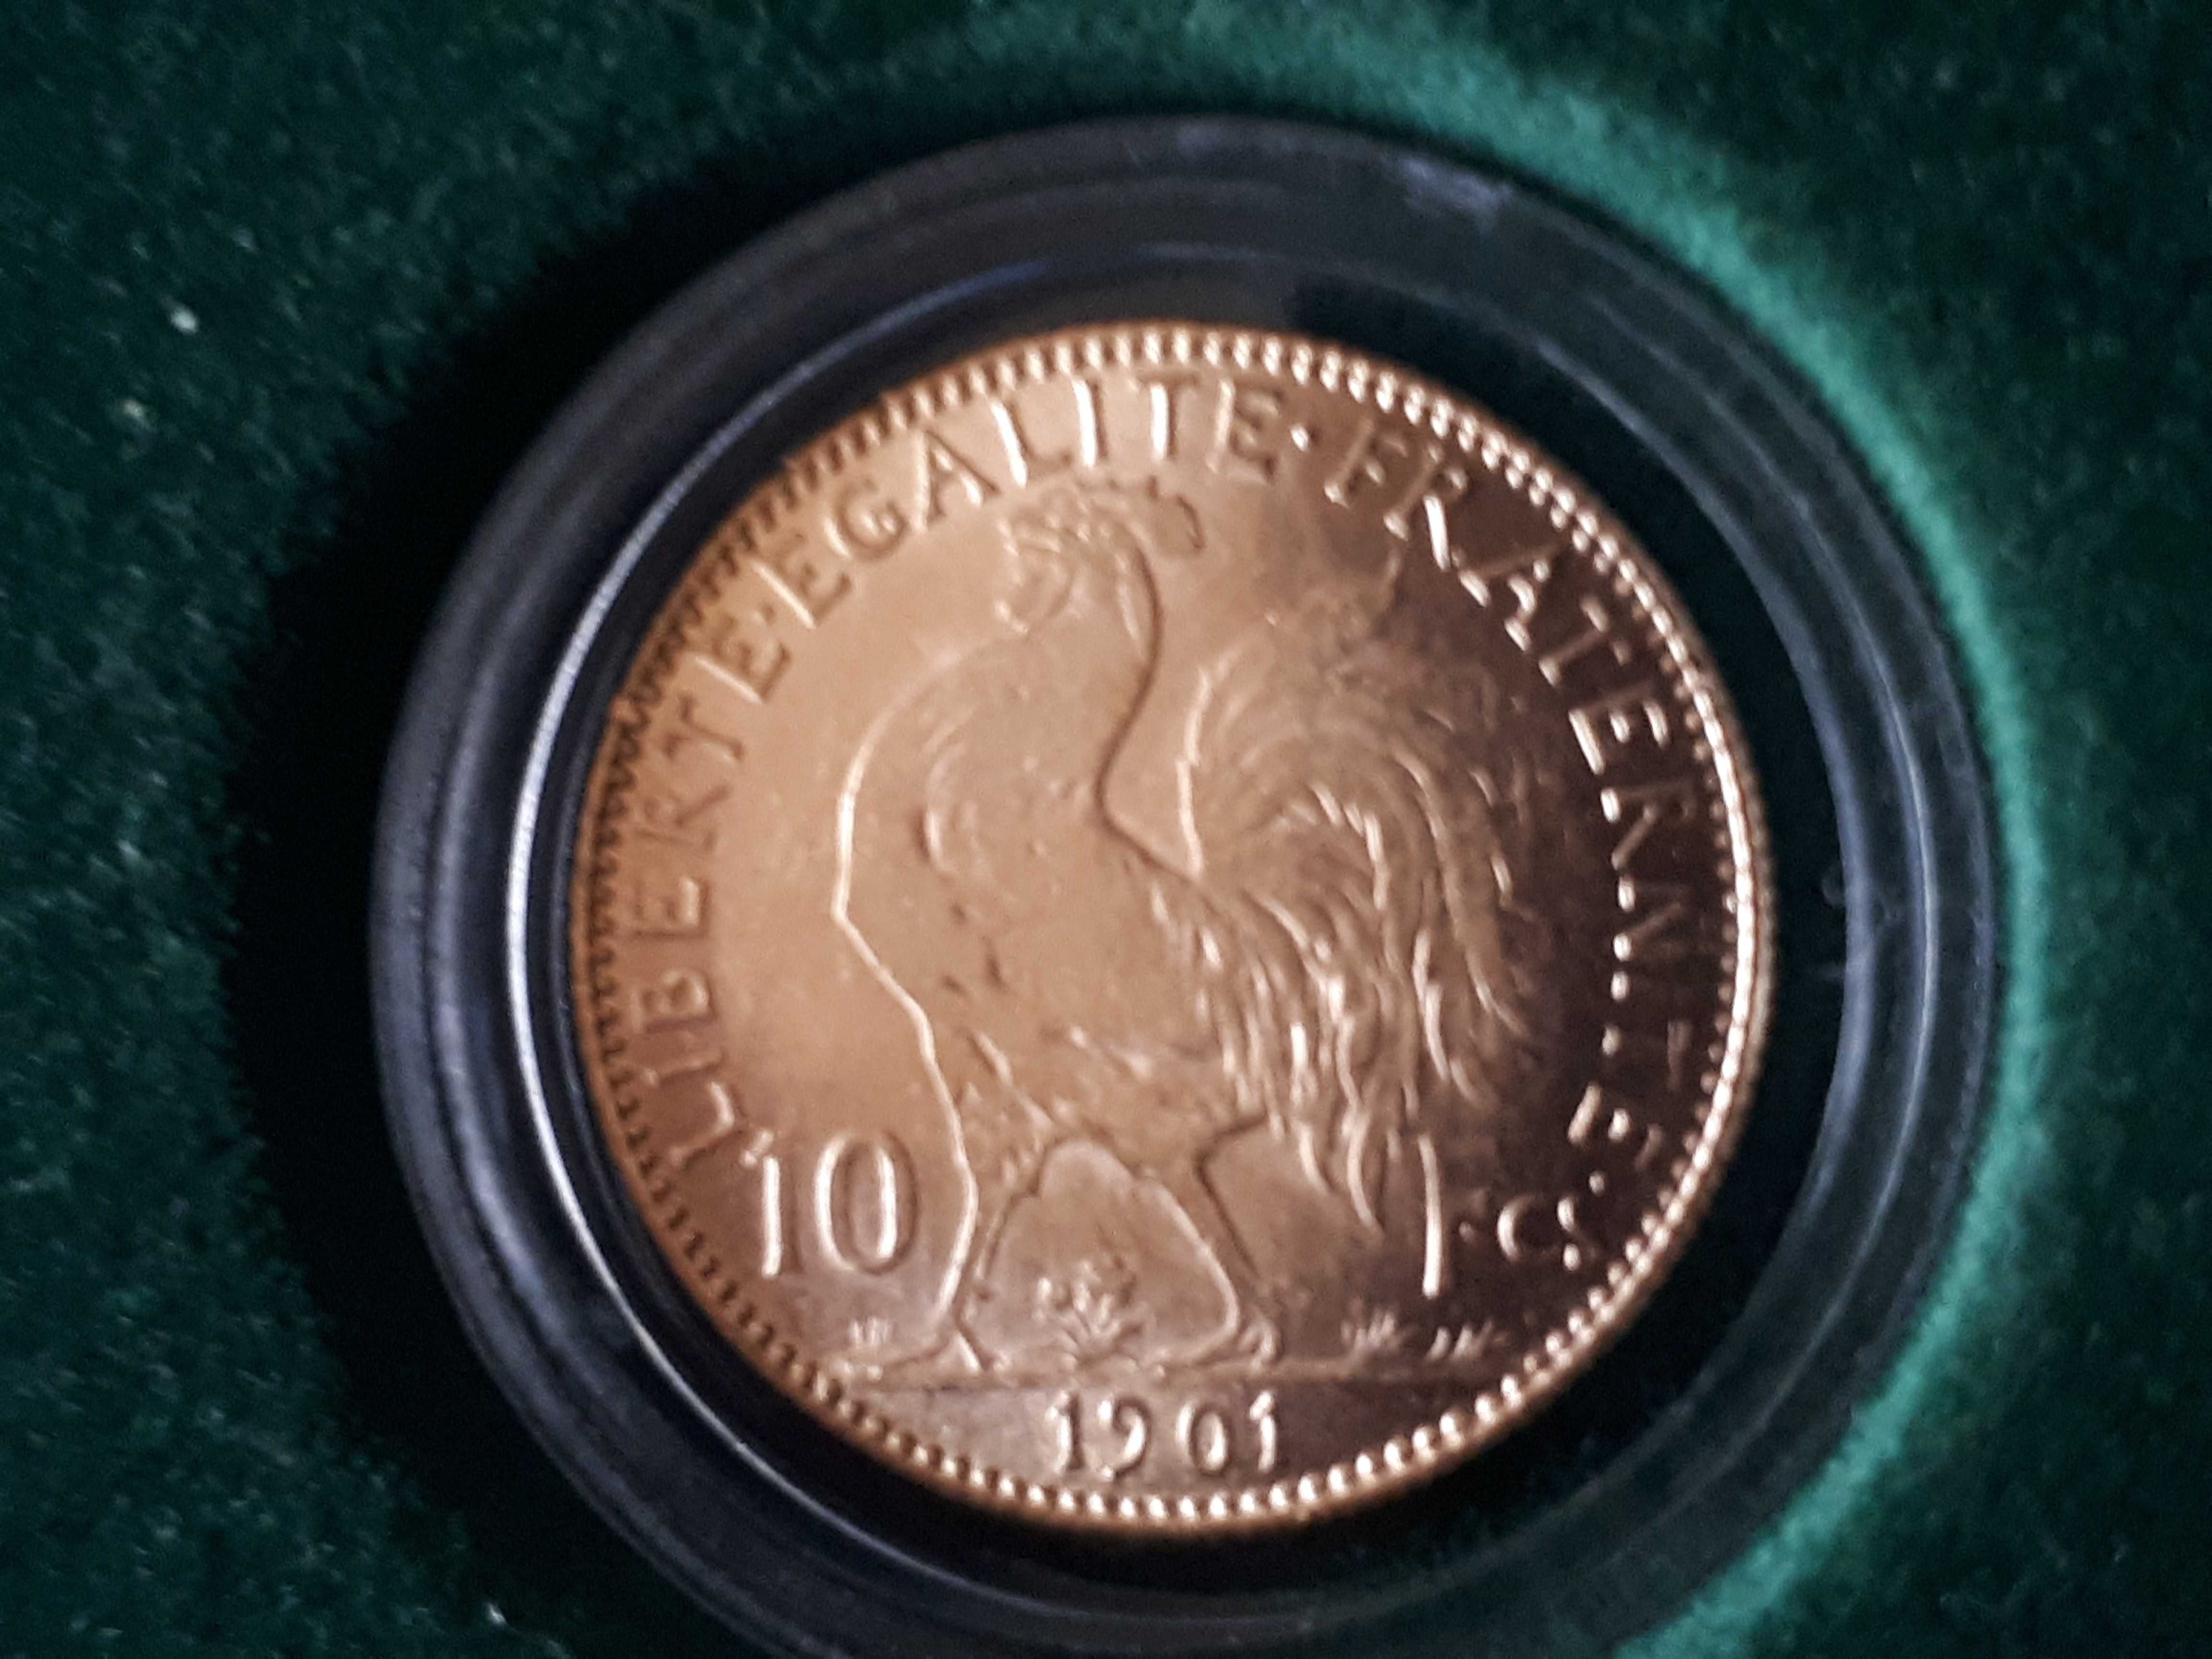 Złota Moneta - 10 franków - Liberte - KOGUT 1901r Francja obniżka